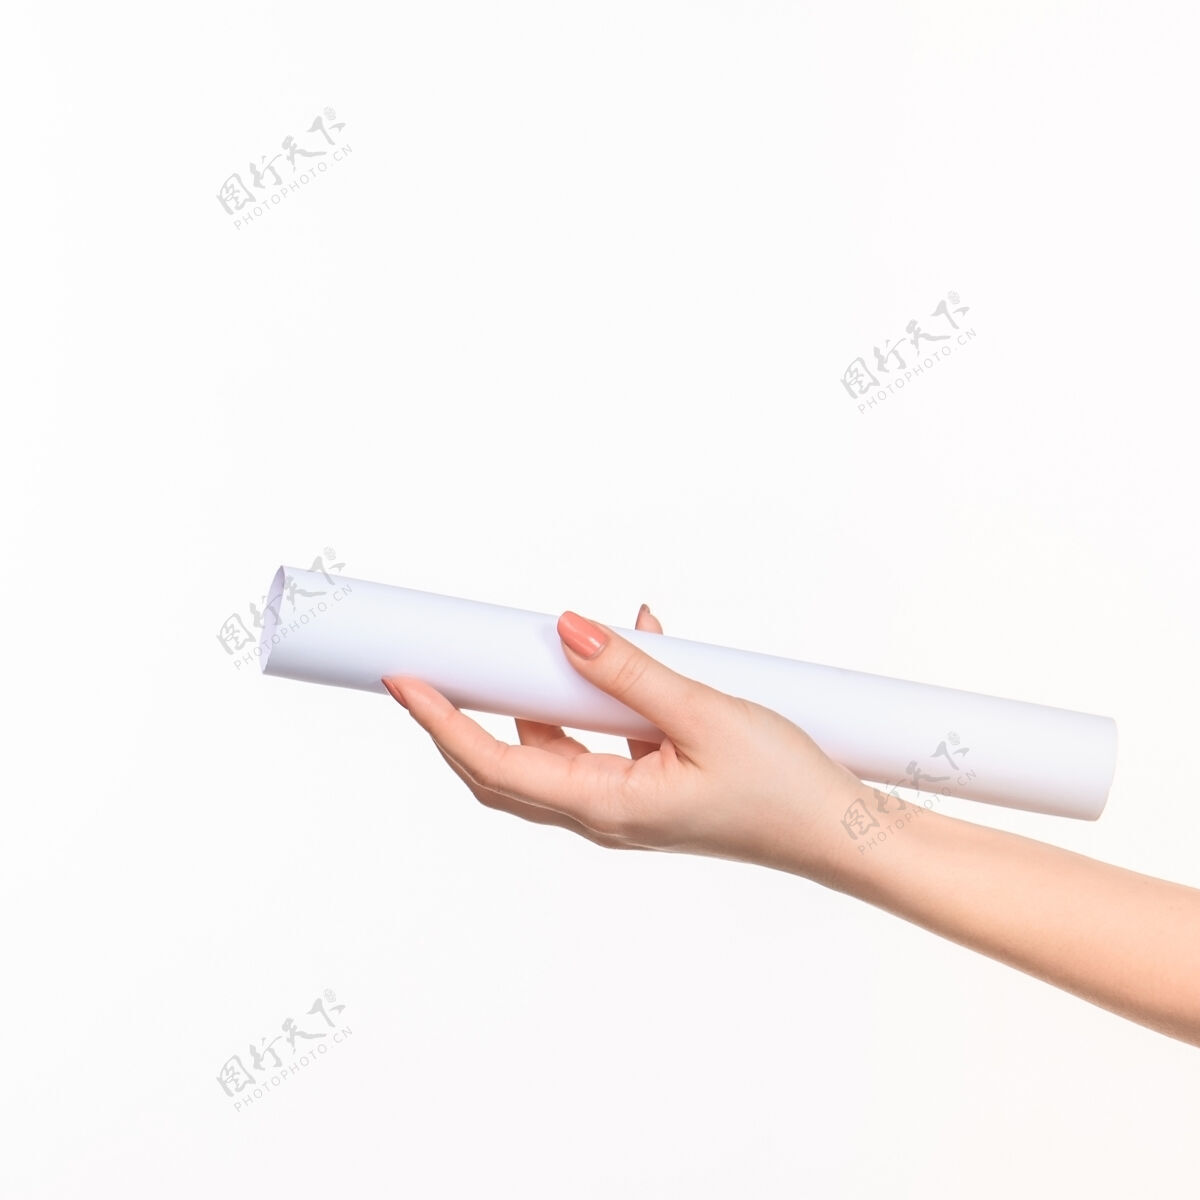 塑料白色圆柱体的道具在女性手上白带右影切割女商人人物